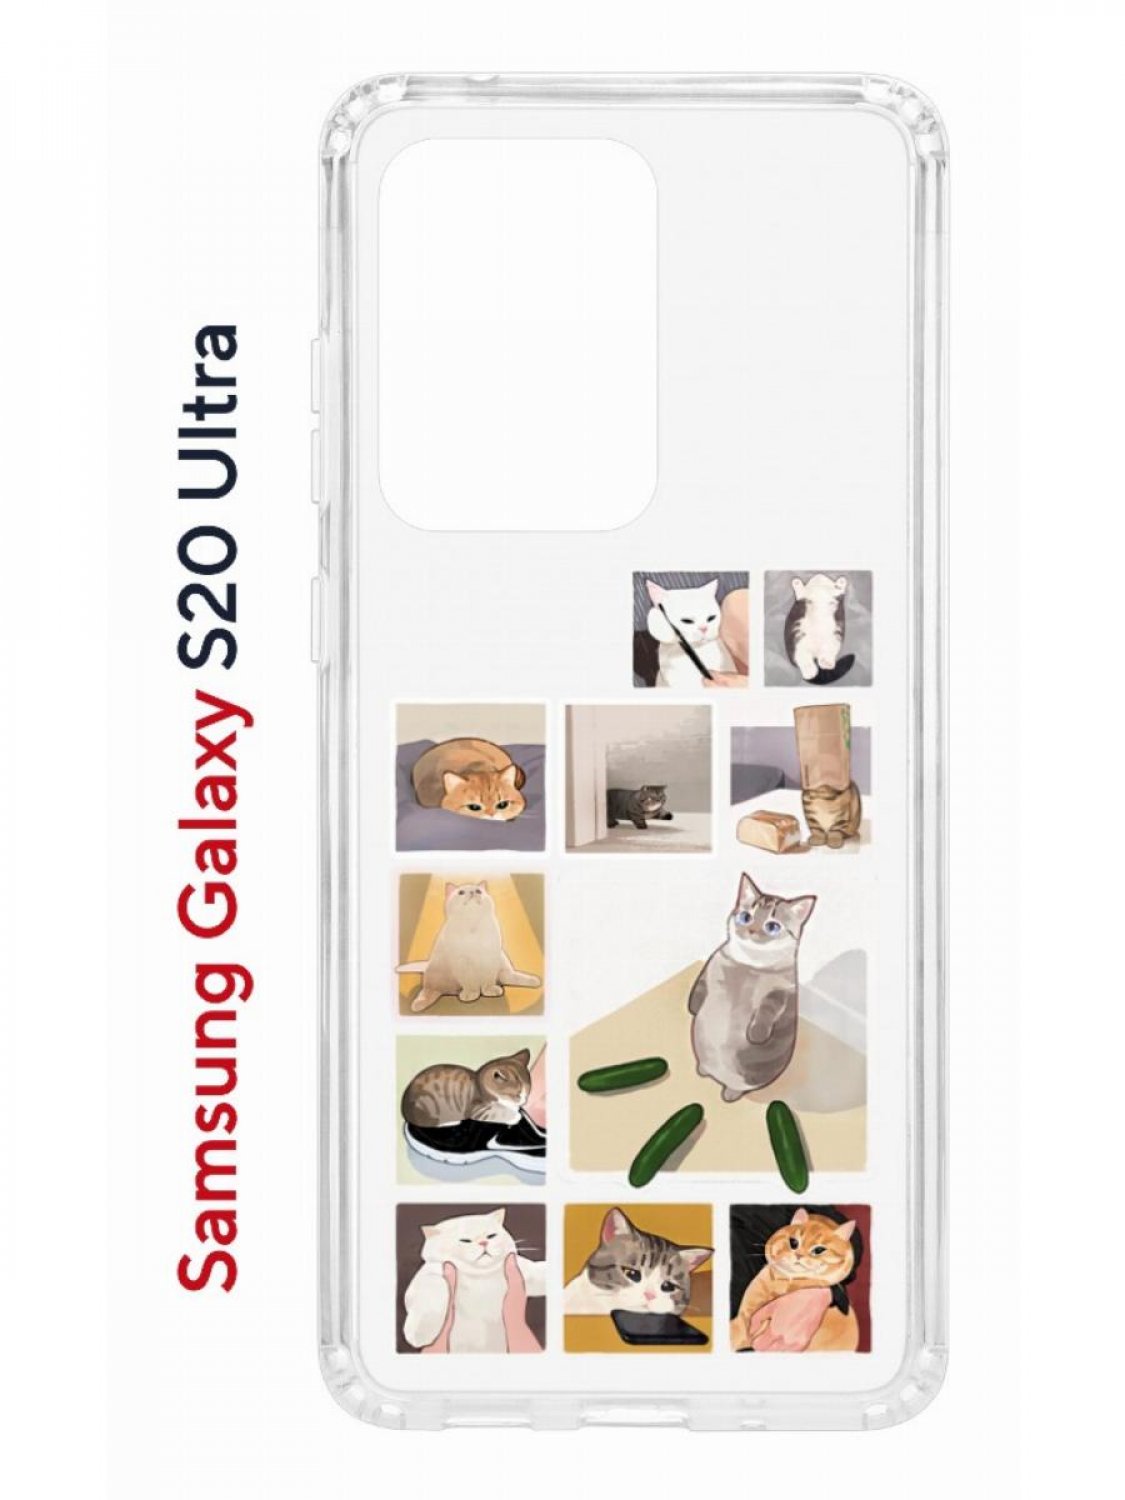 

Чехол на Samsung Galaxy S20 Ultra Kruche Print Коты-Мемы,противоударный бампер с принтом, Прозрачный;бежевый;зеленый;серый, Самсунг Галакси с20 Ультра